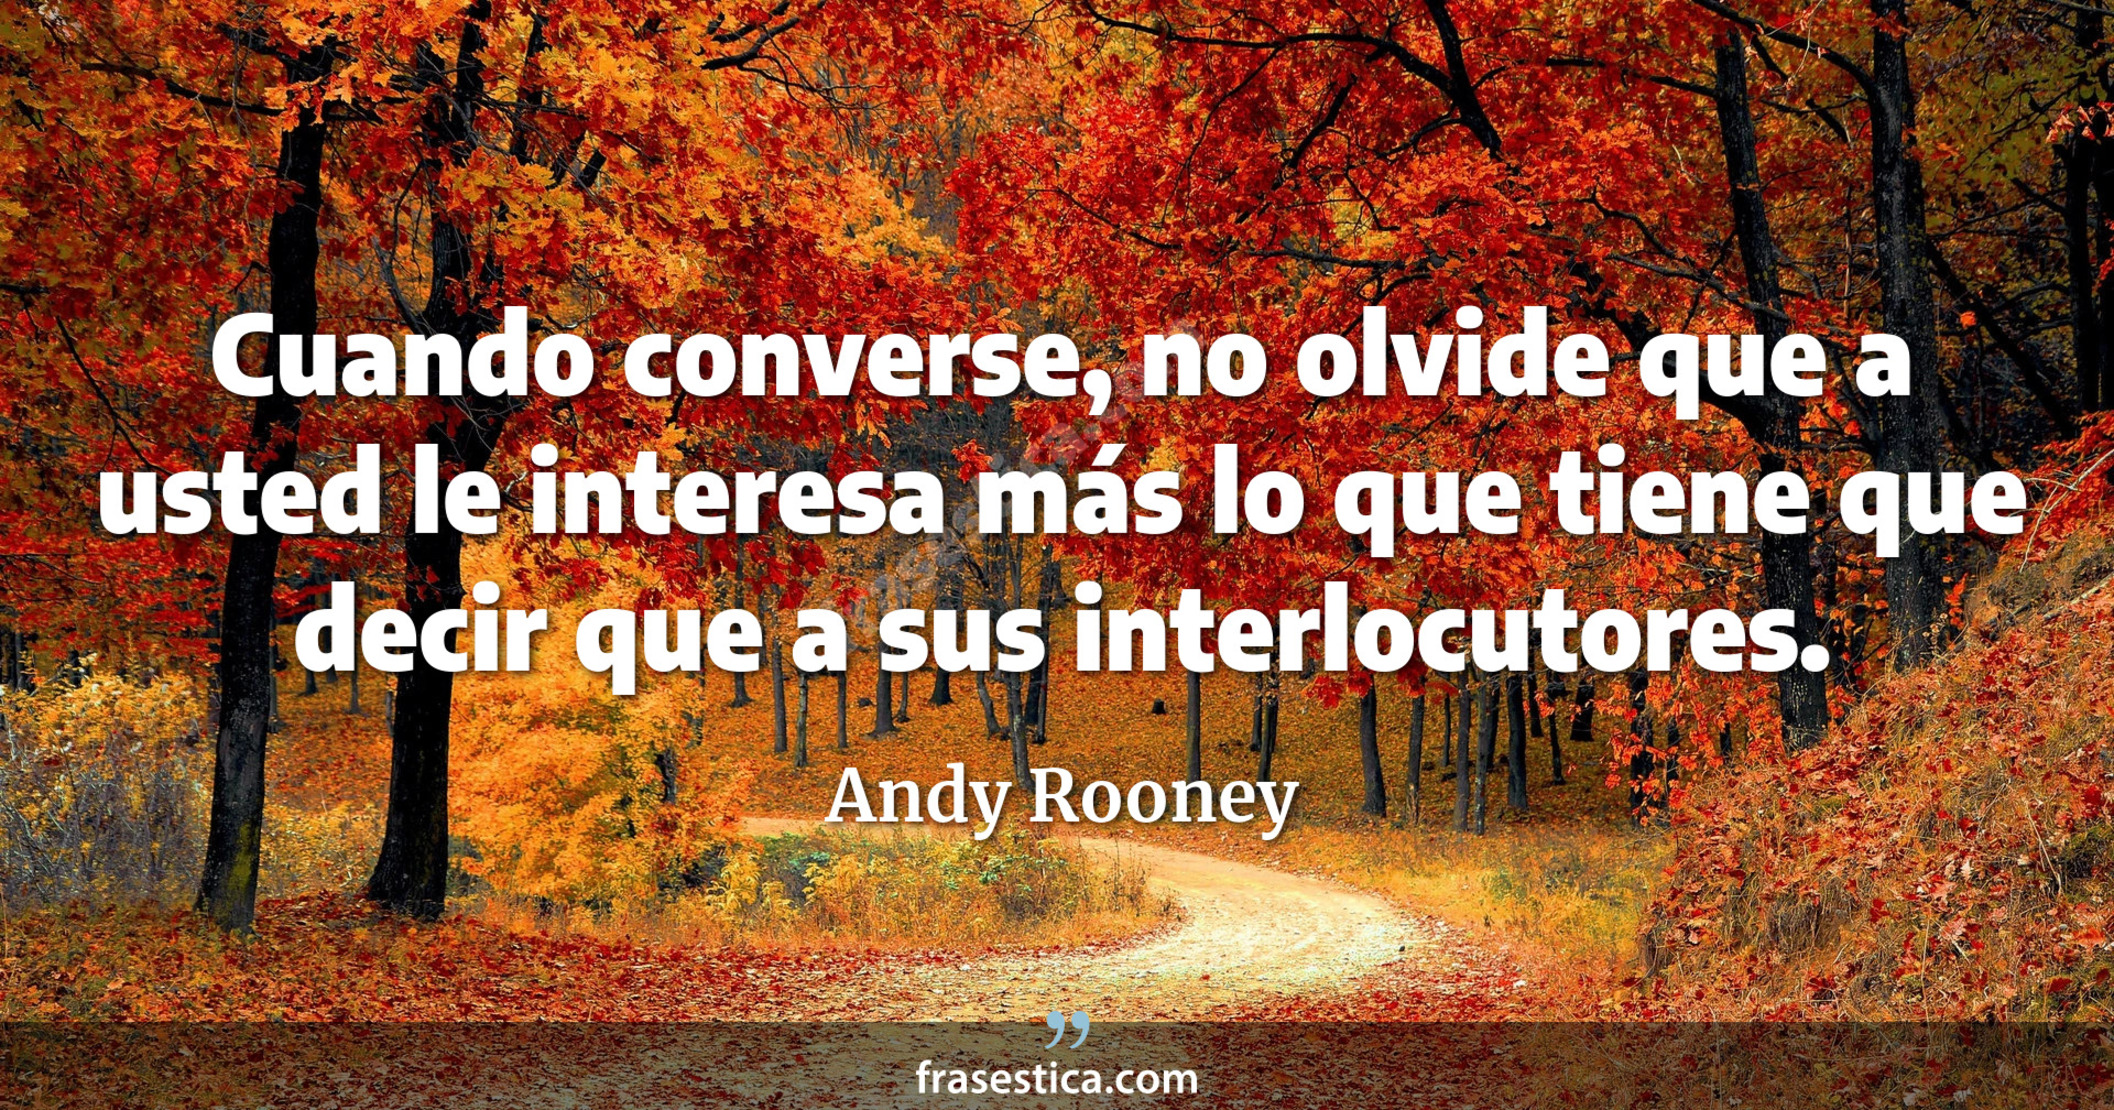 Cuando converse, no olvide que a usted le interesa más lo que tiene que decir que a sus interlocutores. - Andy Rooney